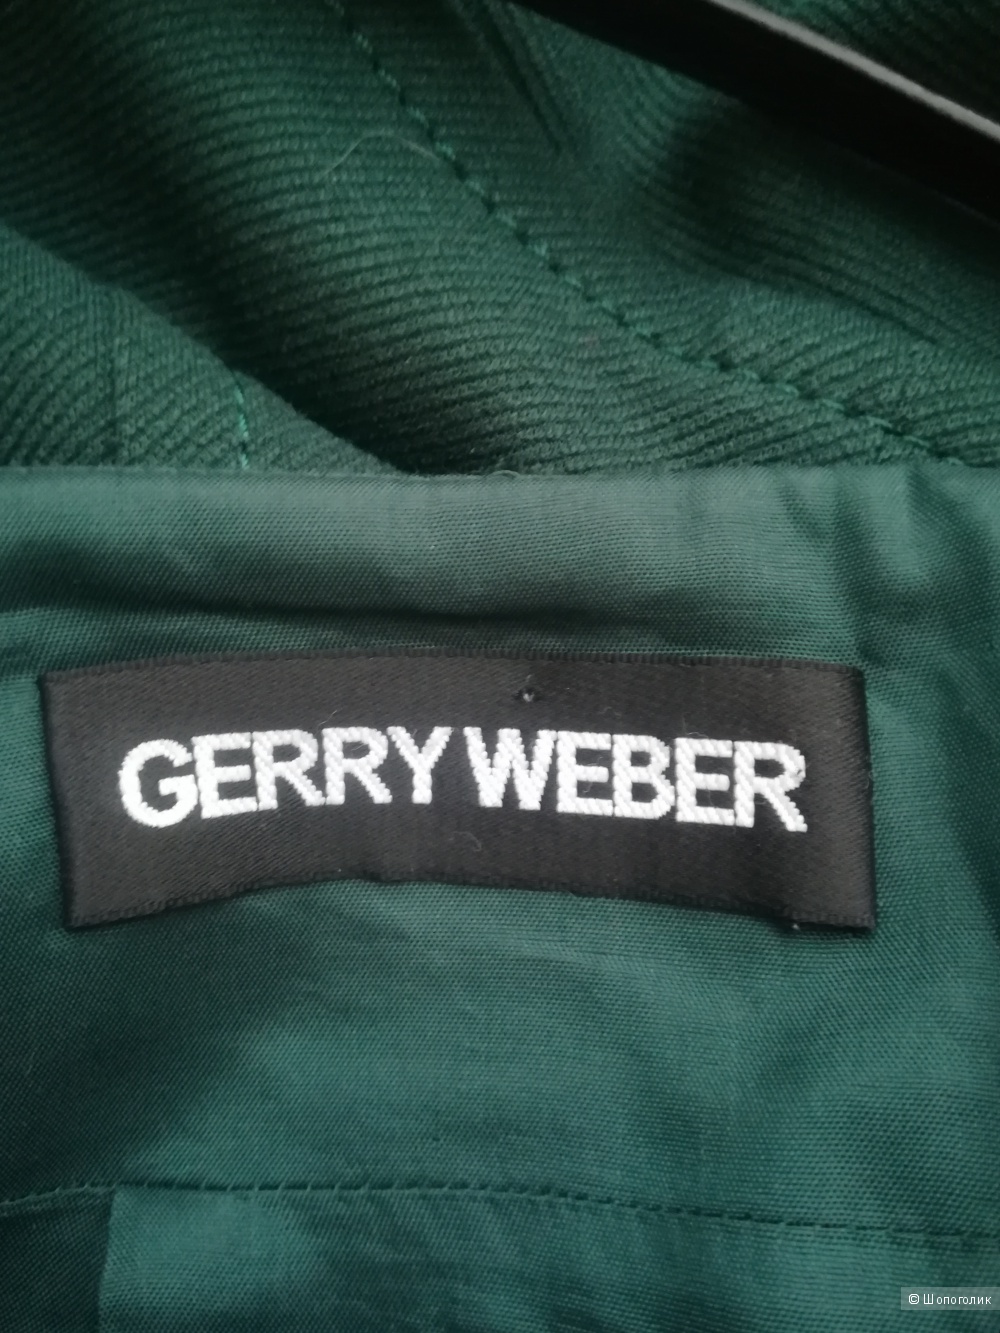 Юбка Gerry weber,размер 44-46